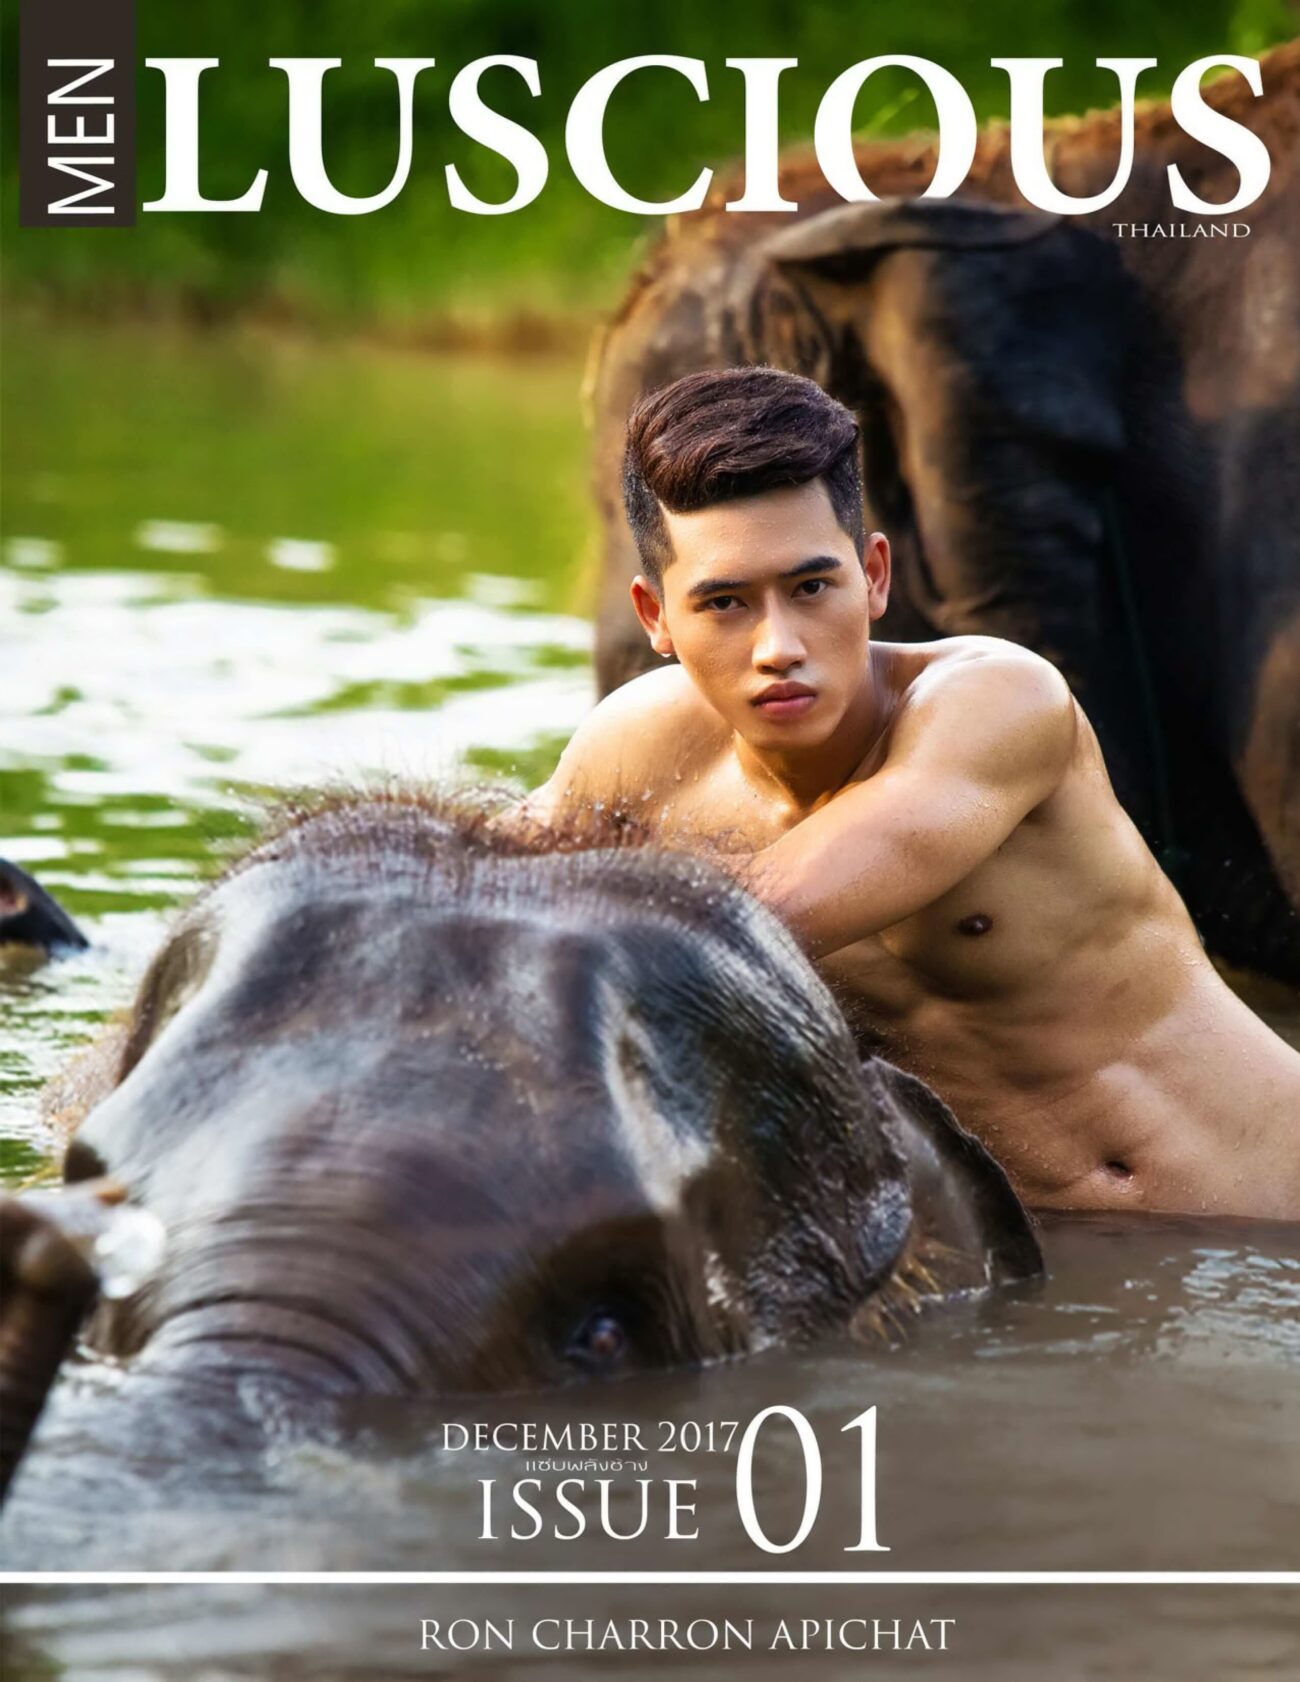 Men luscious Issue 01 – Ron Charron Apichat ‖ 19+【PHOTO】